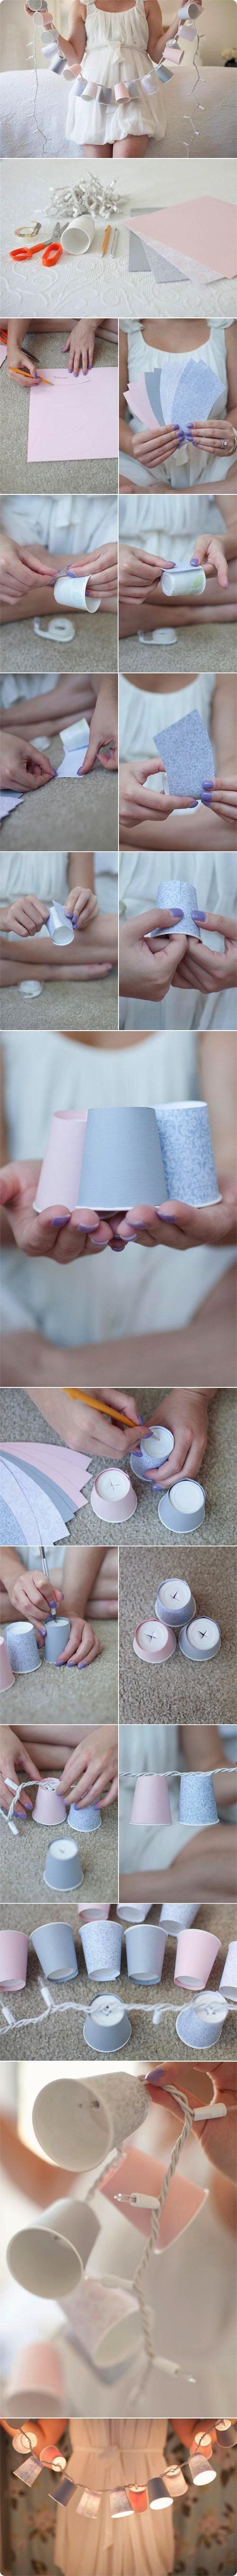 Hochzeit - DIY Decorative Papierbecher Garland Lichter